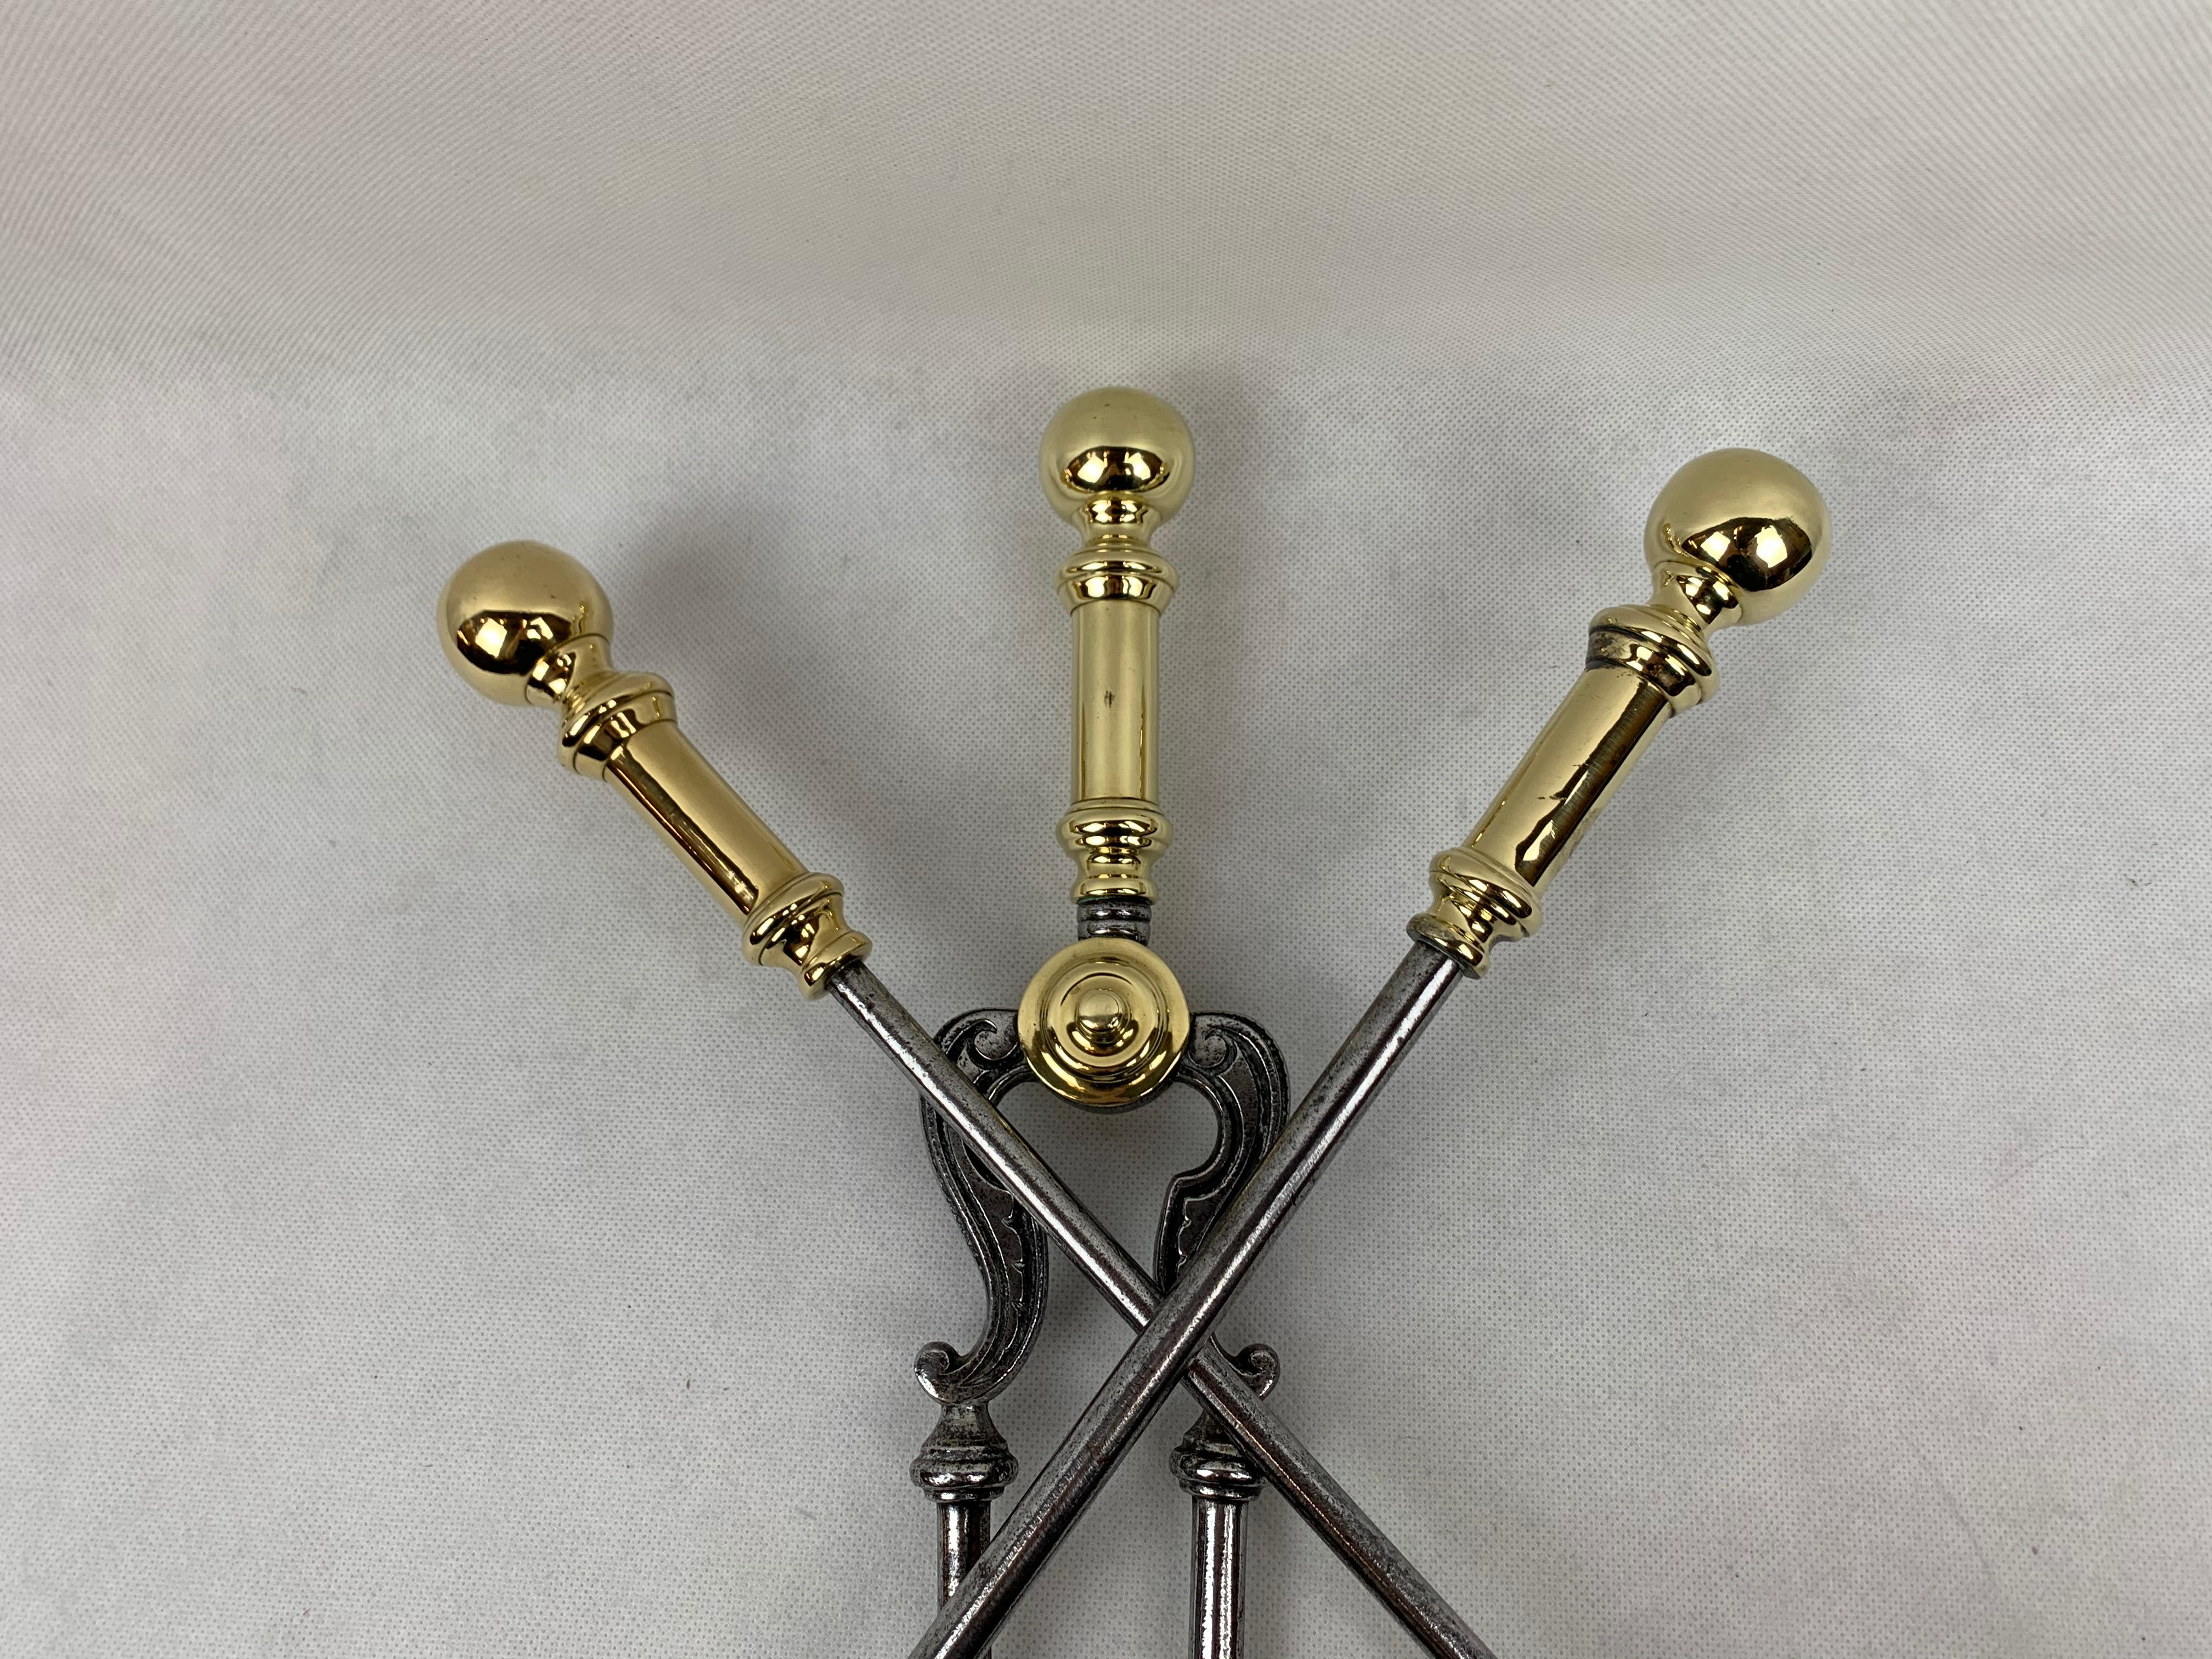 Three Piece Firetool Set, Brass & Steel, English 19th Century 4